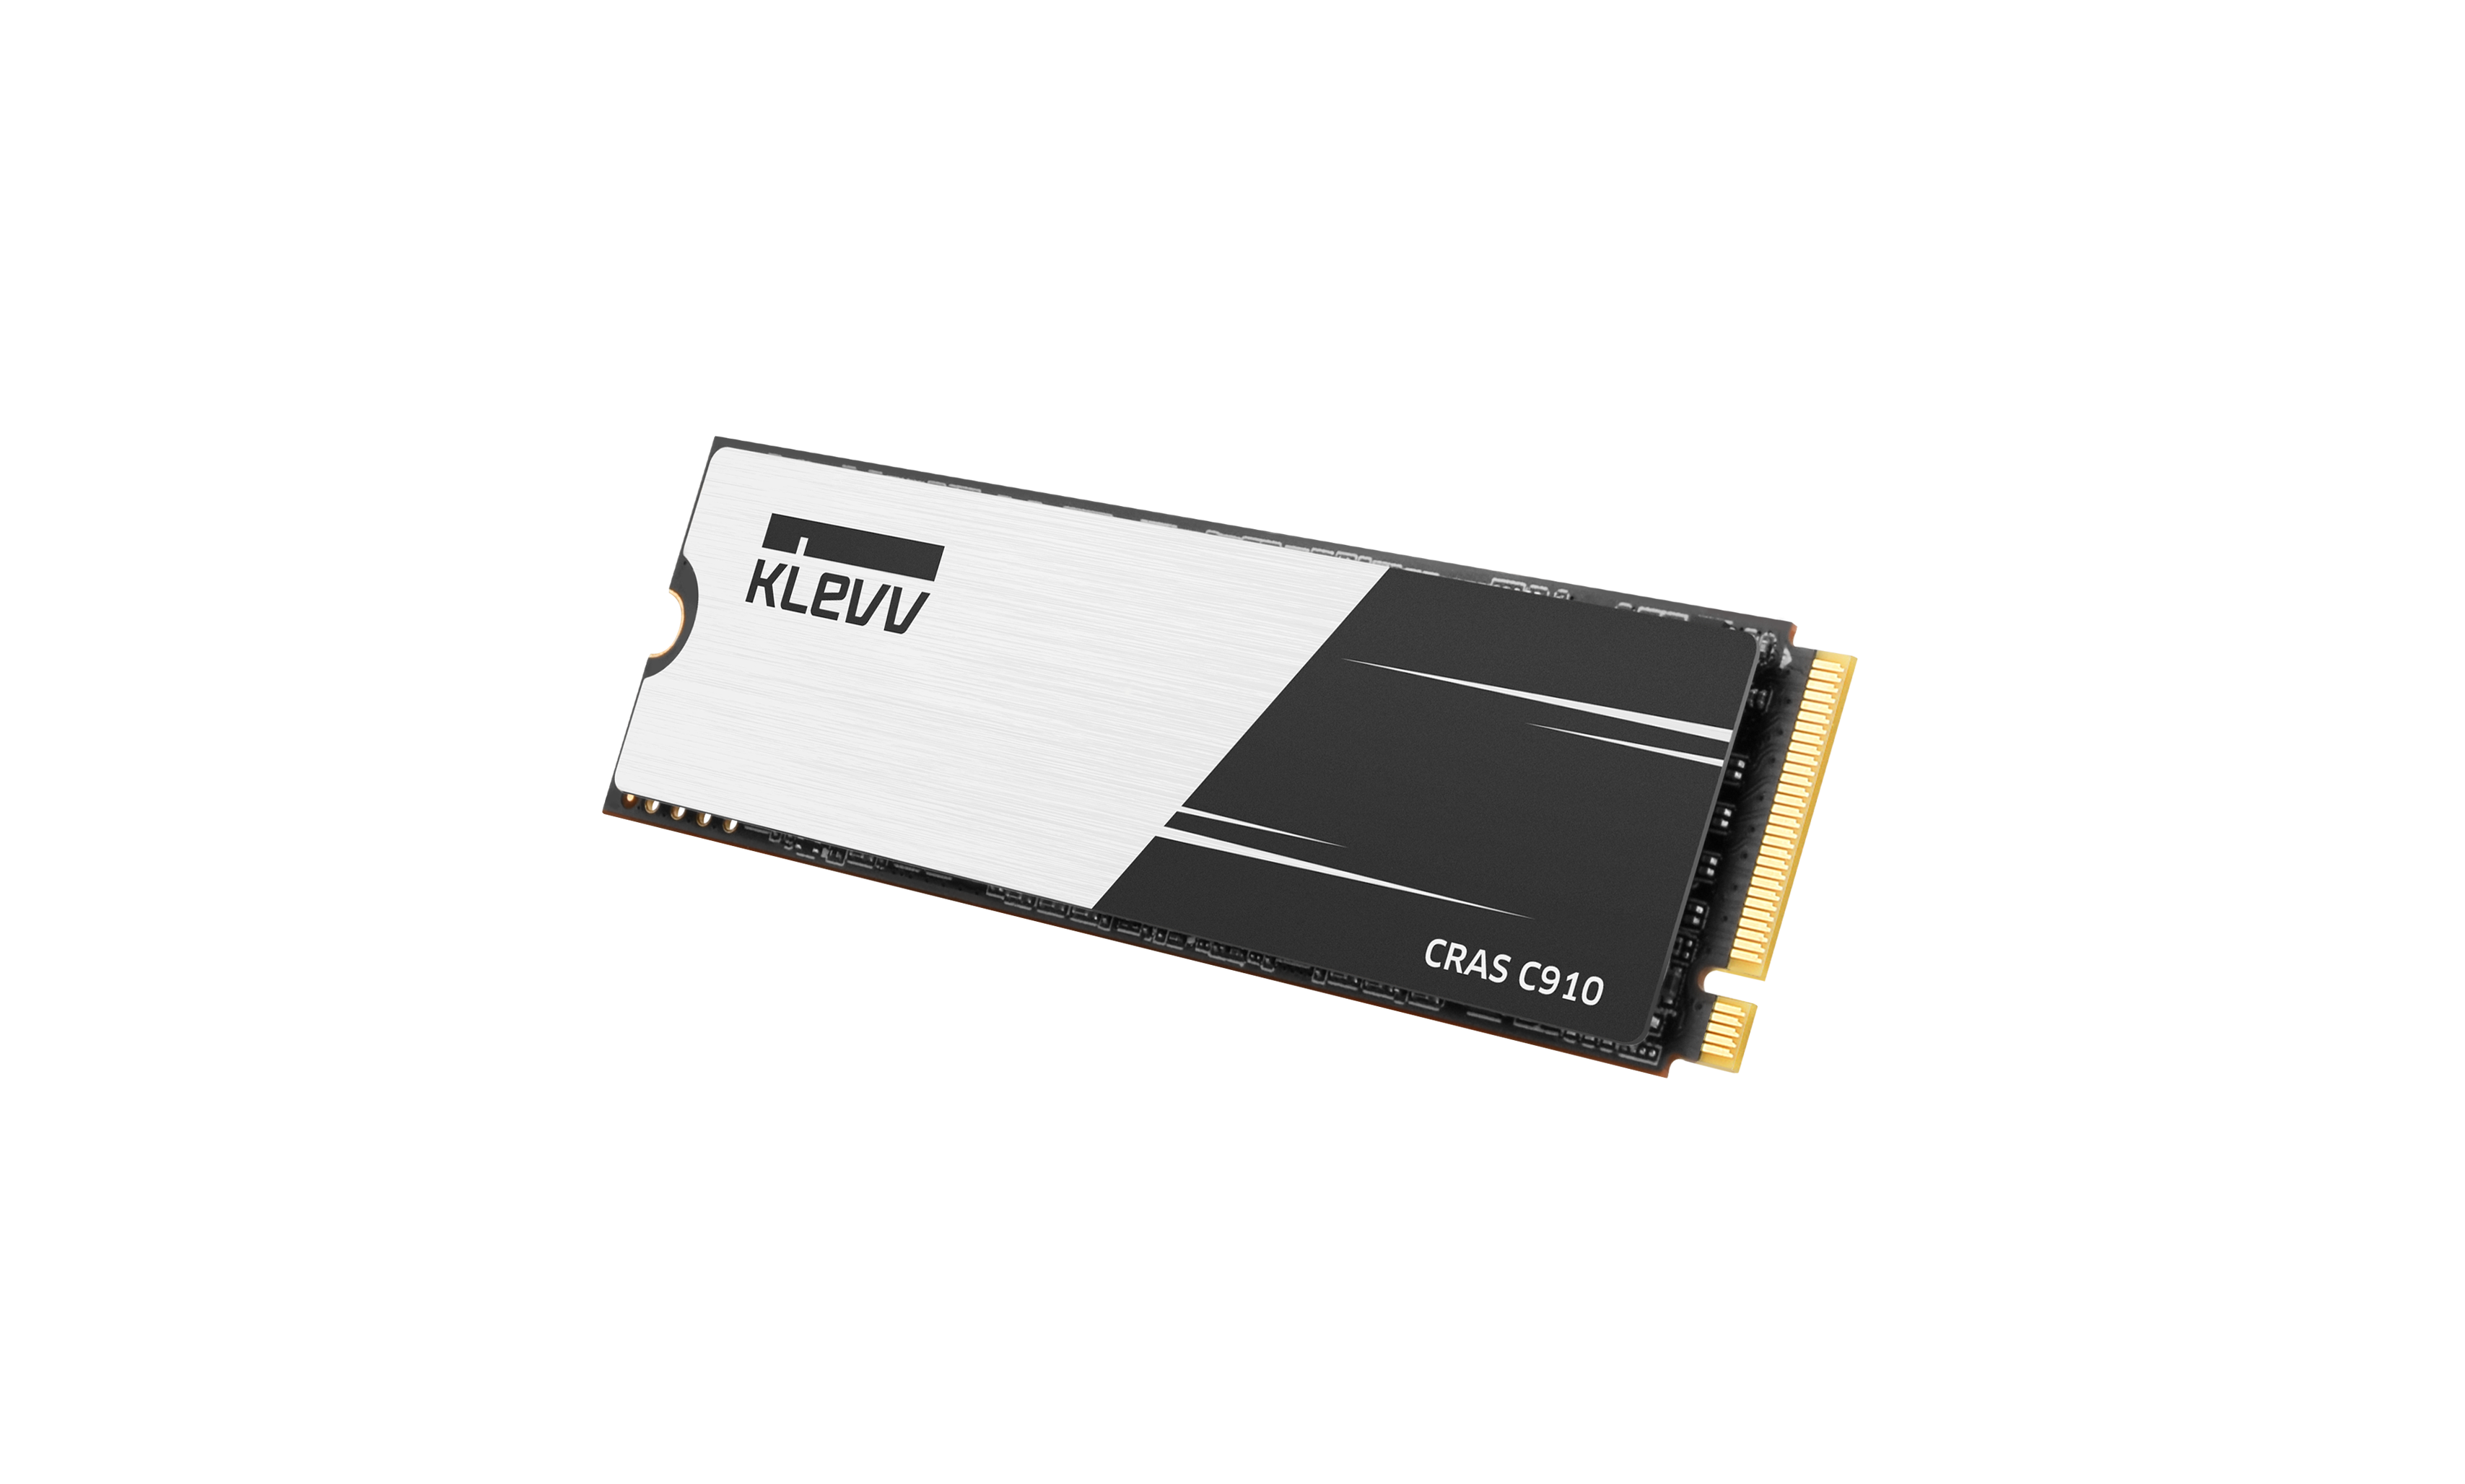 Klevv CRAS C910 PCIe 4.0 1TB (K01TBM2SPO-C91) (5000MB/s)